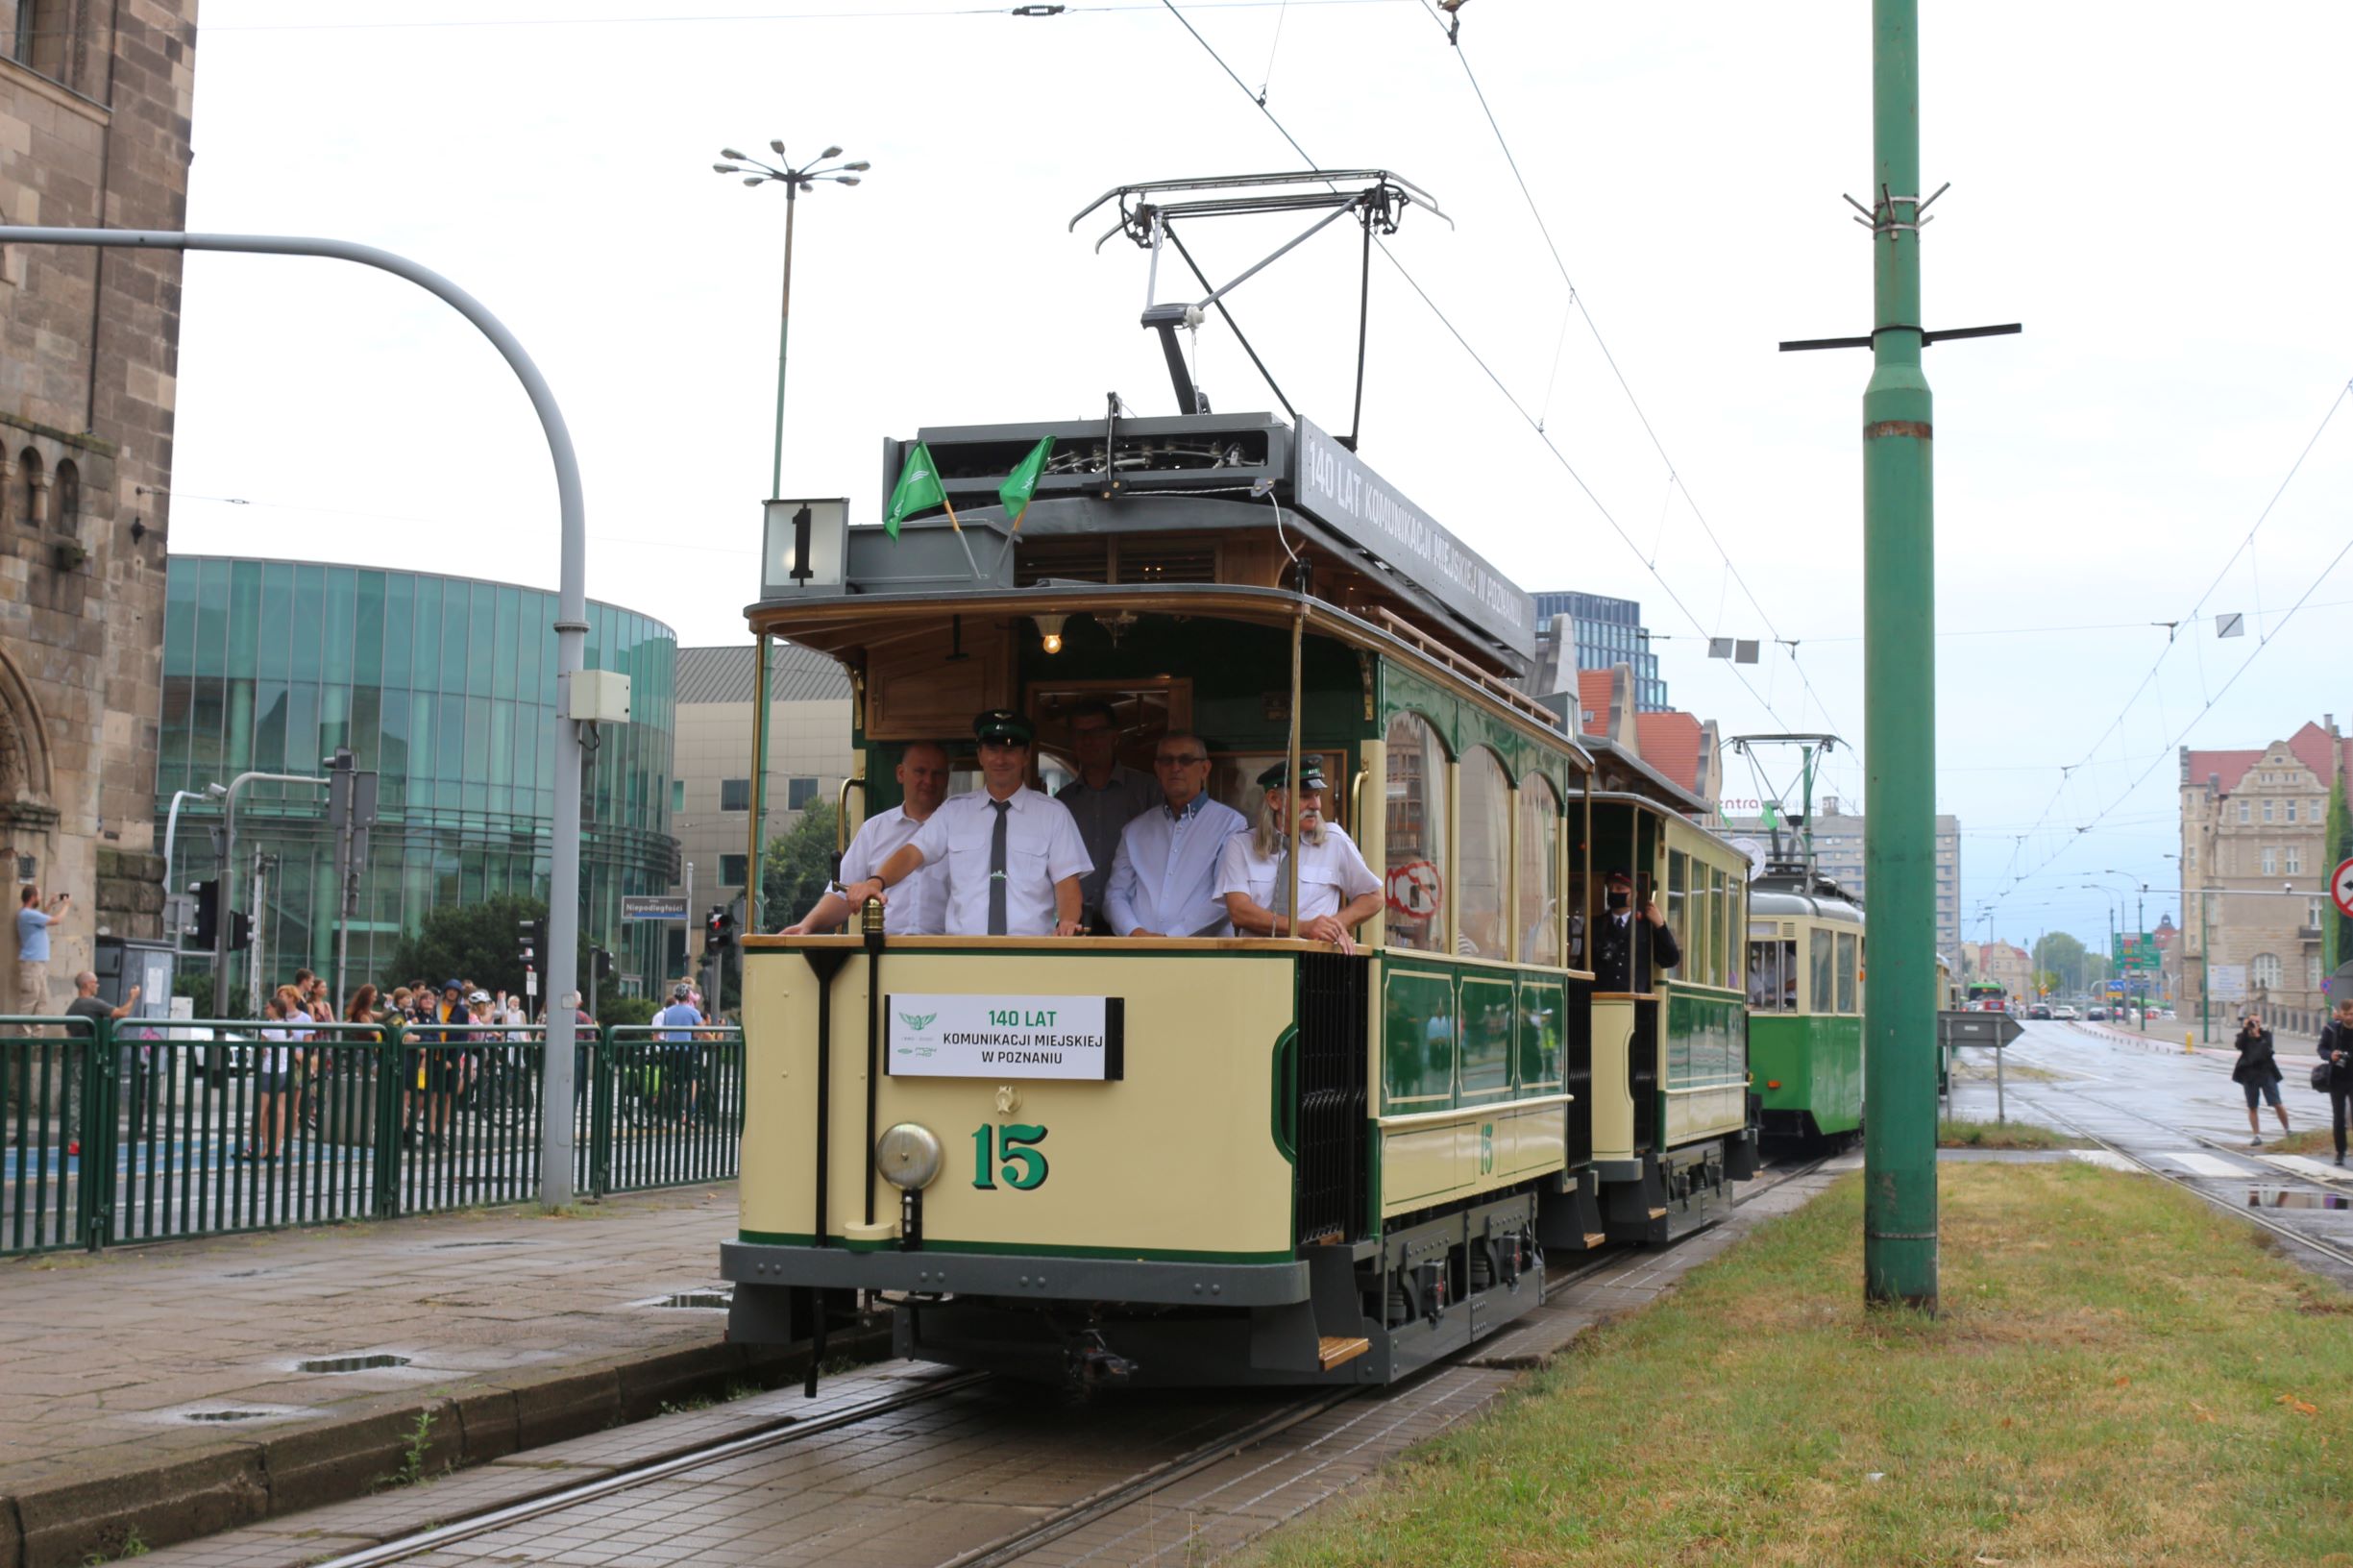 W niedzielę (30 maja) odbędą się specjalne przejazdy tramwajem typu I z wagonem Carl Weyer!